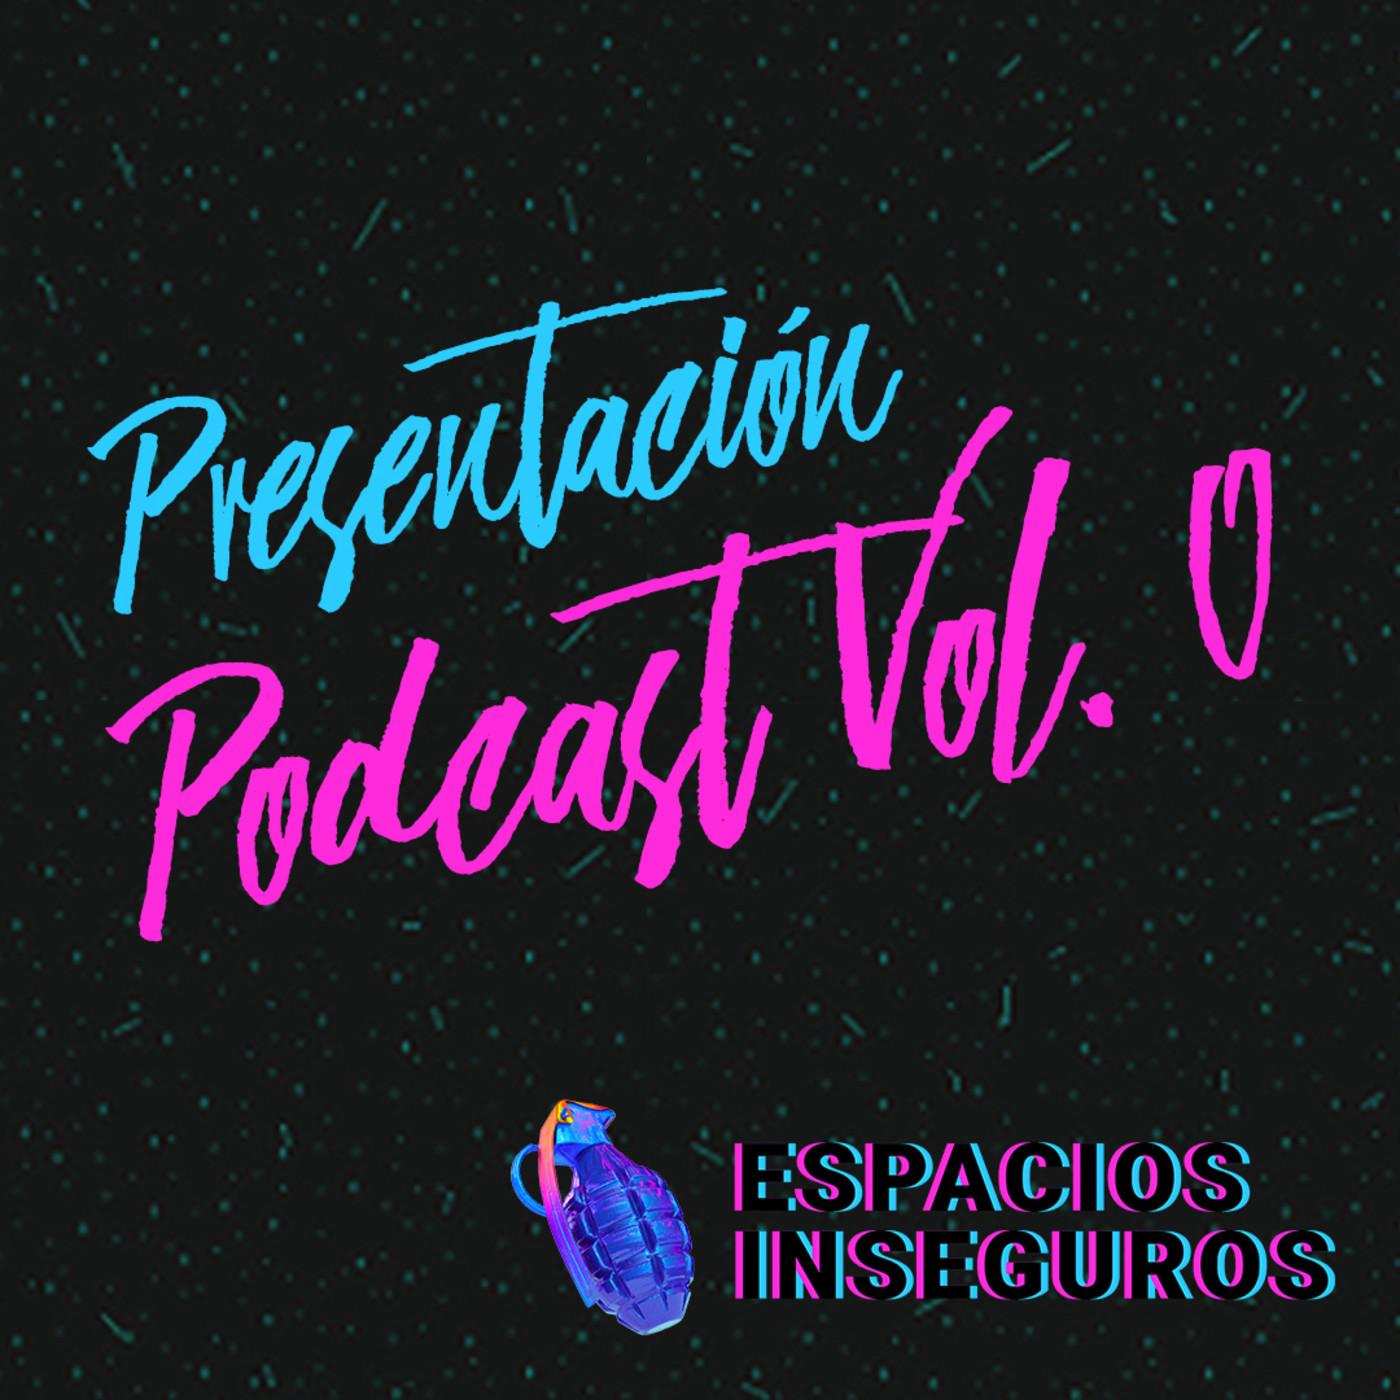 Presentación | Espacios Inseguros Podcast Vol. 0